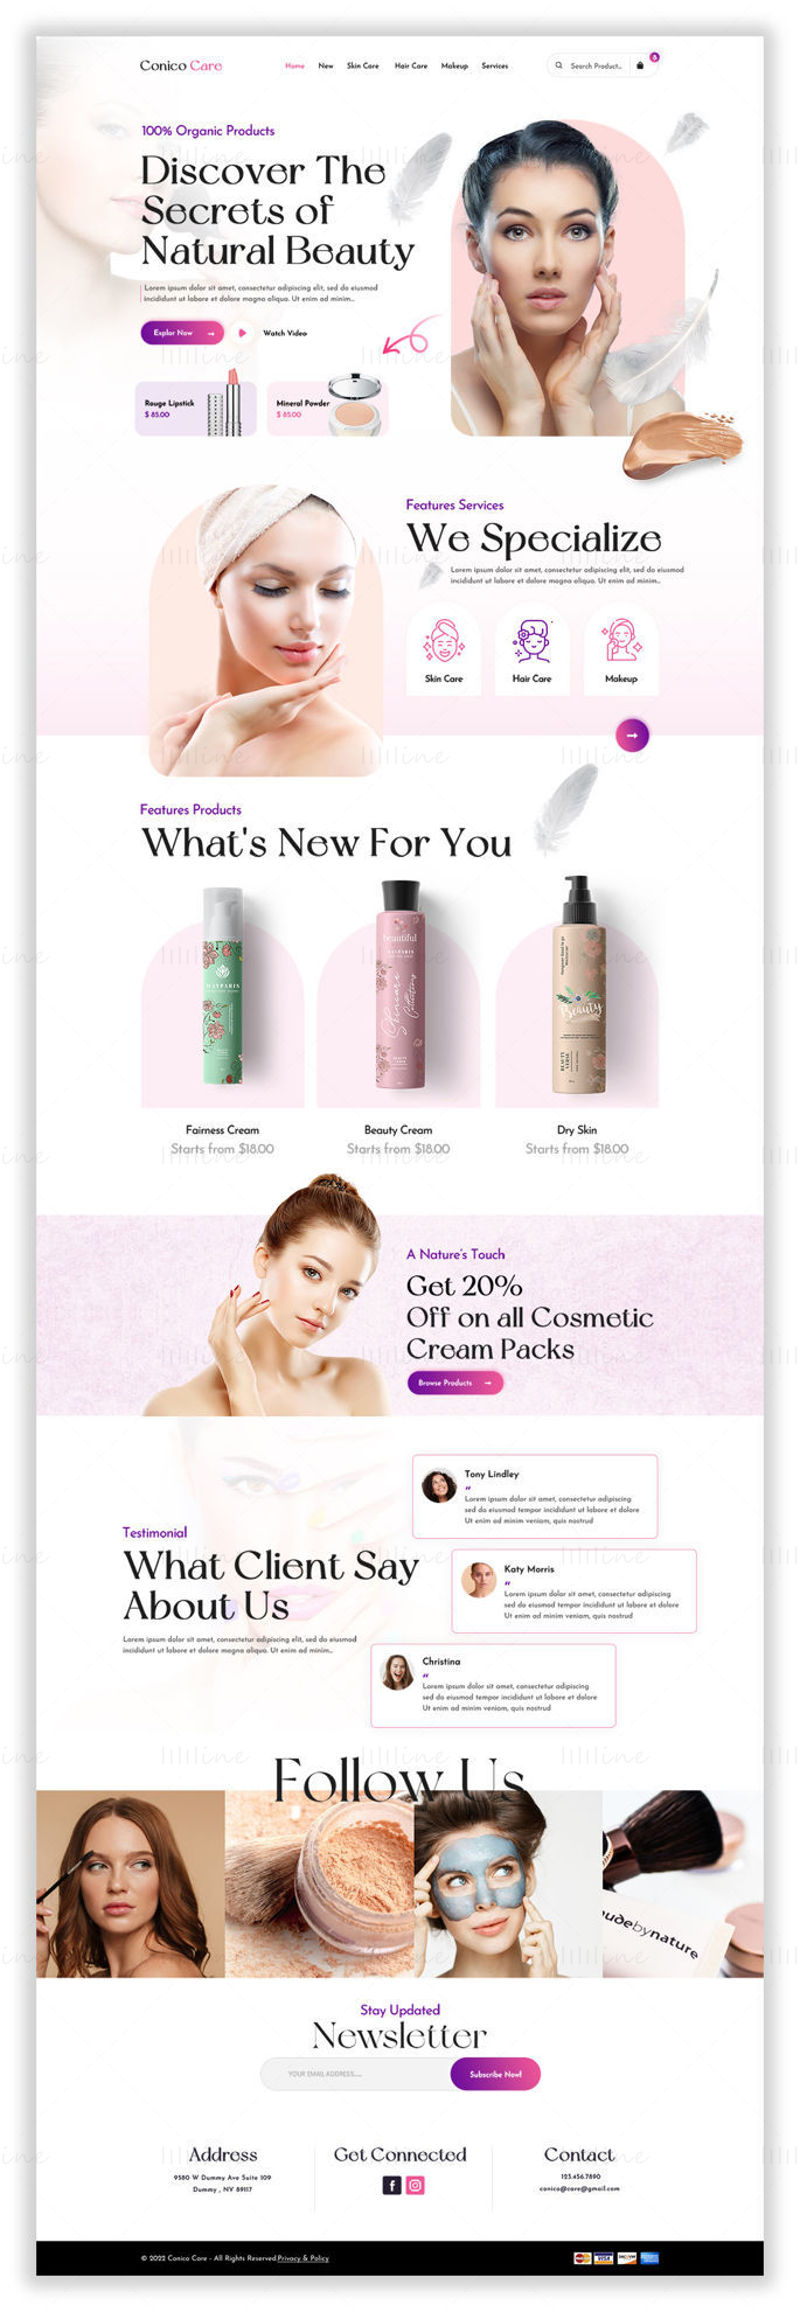 Домашняя страница косметики и ухода за кожей Conico-Care — пользовательский интерфейс Adobe Photoshop